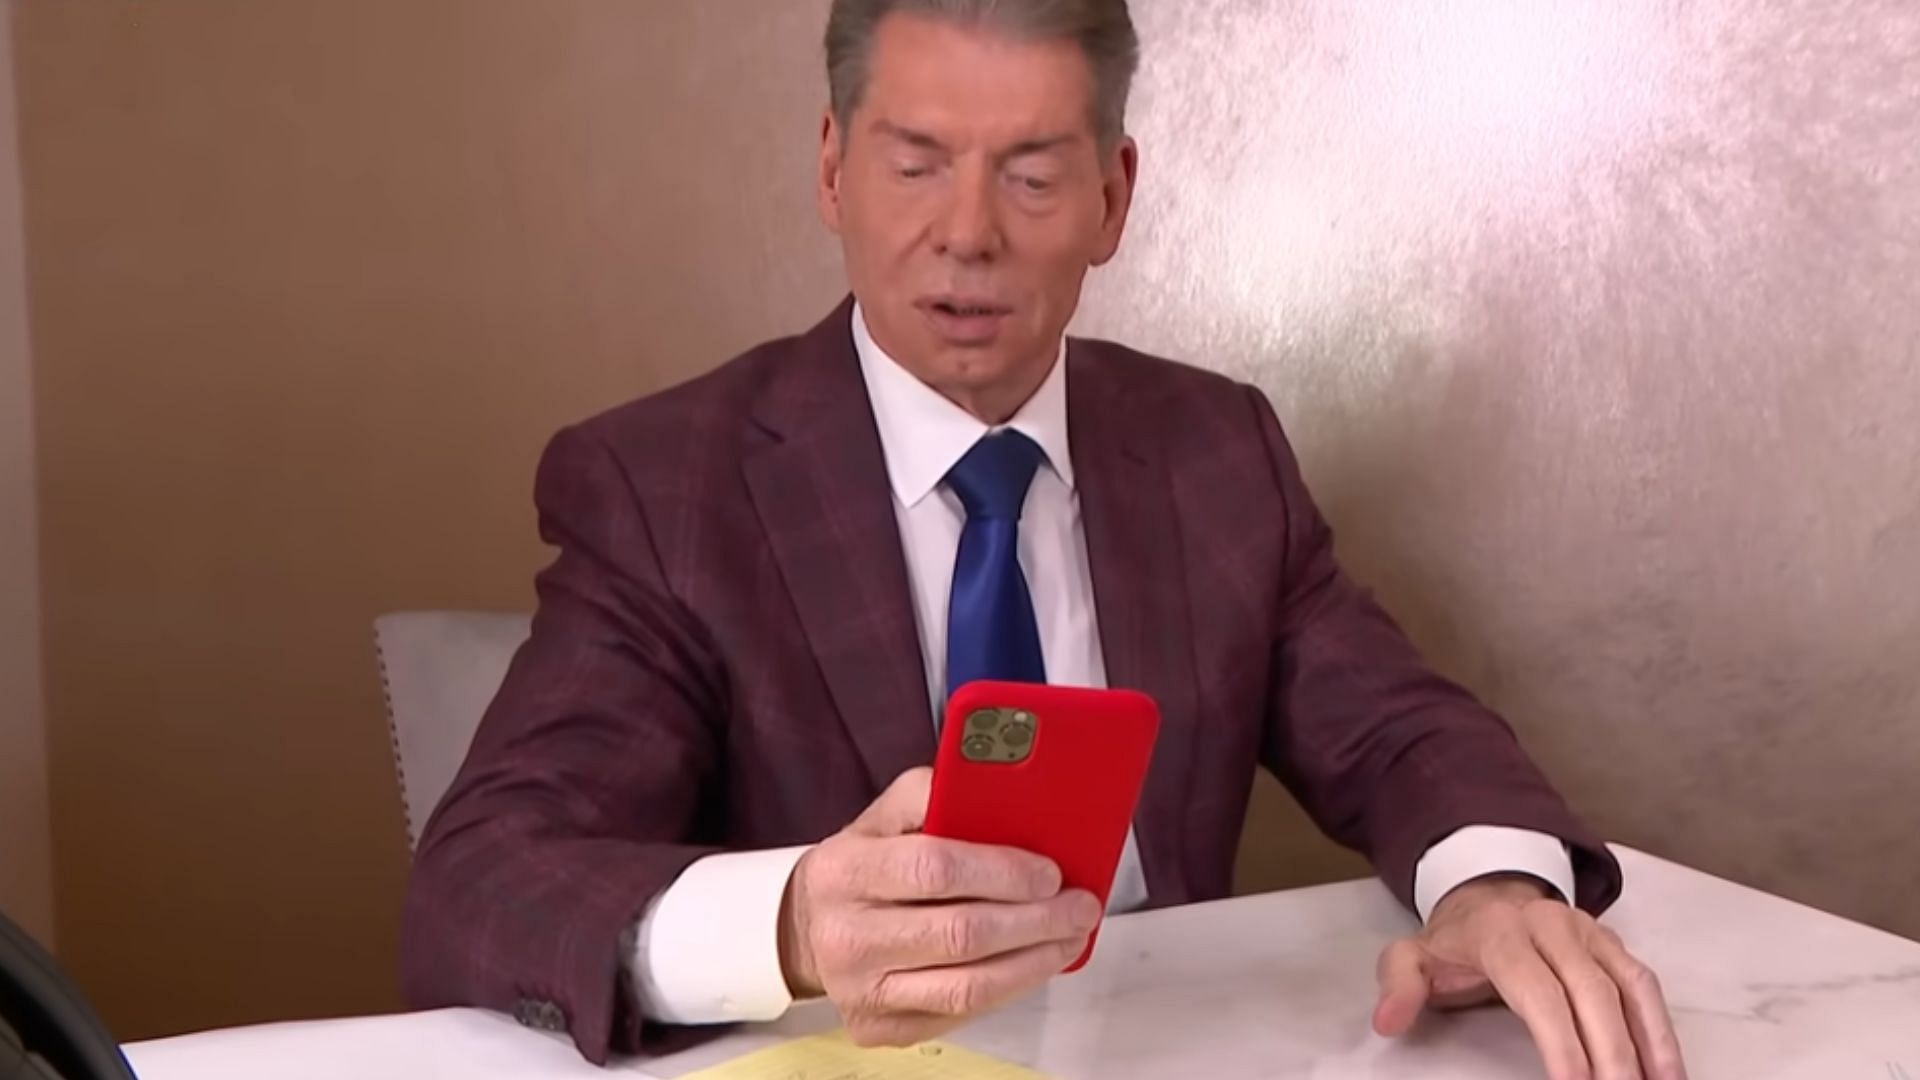 Vince McMahon checking his phone (via WWE